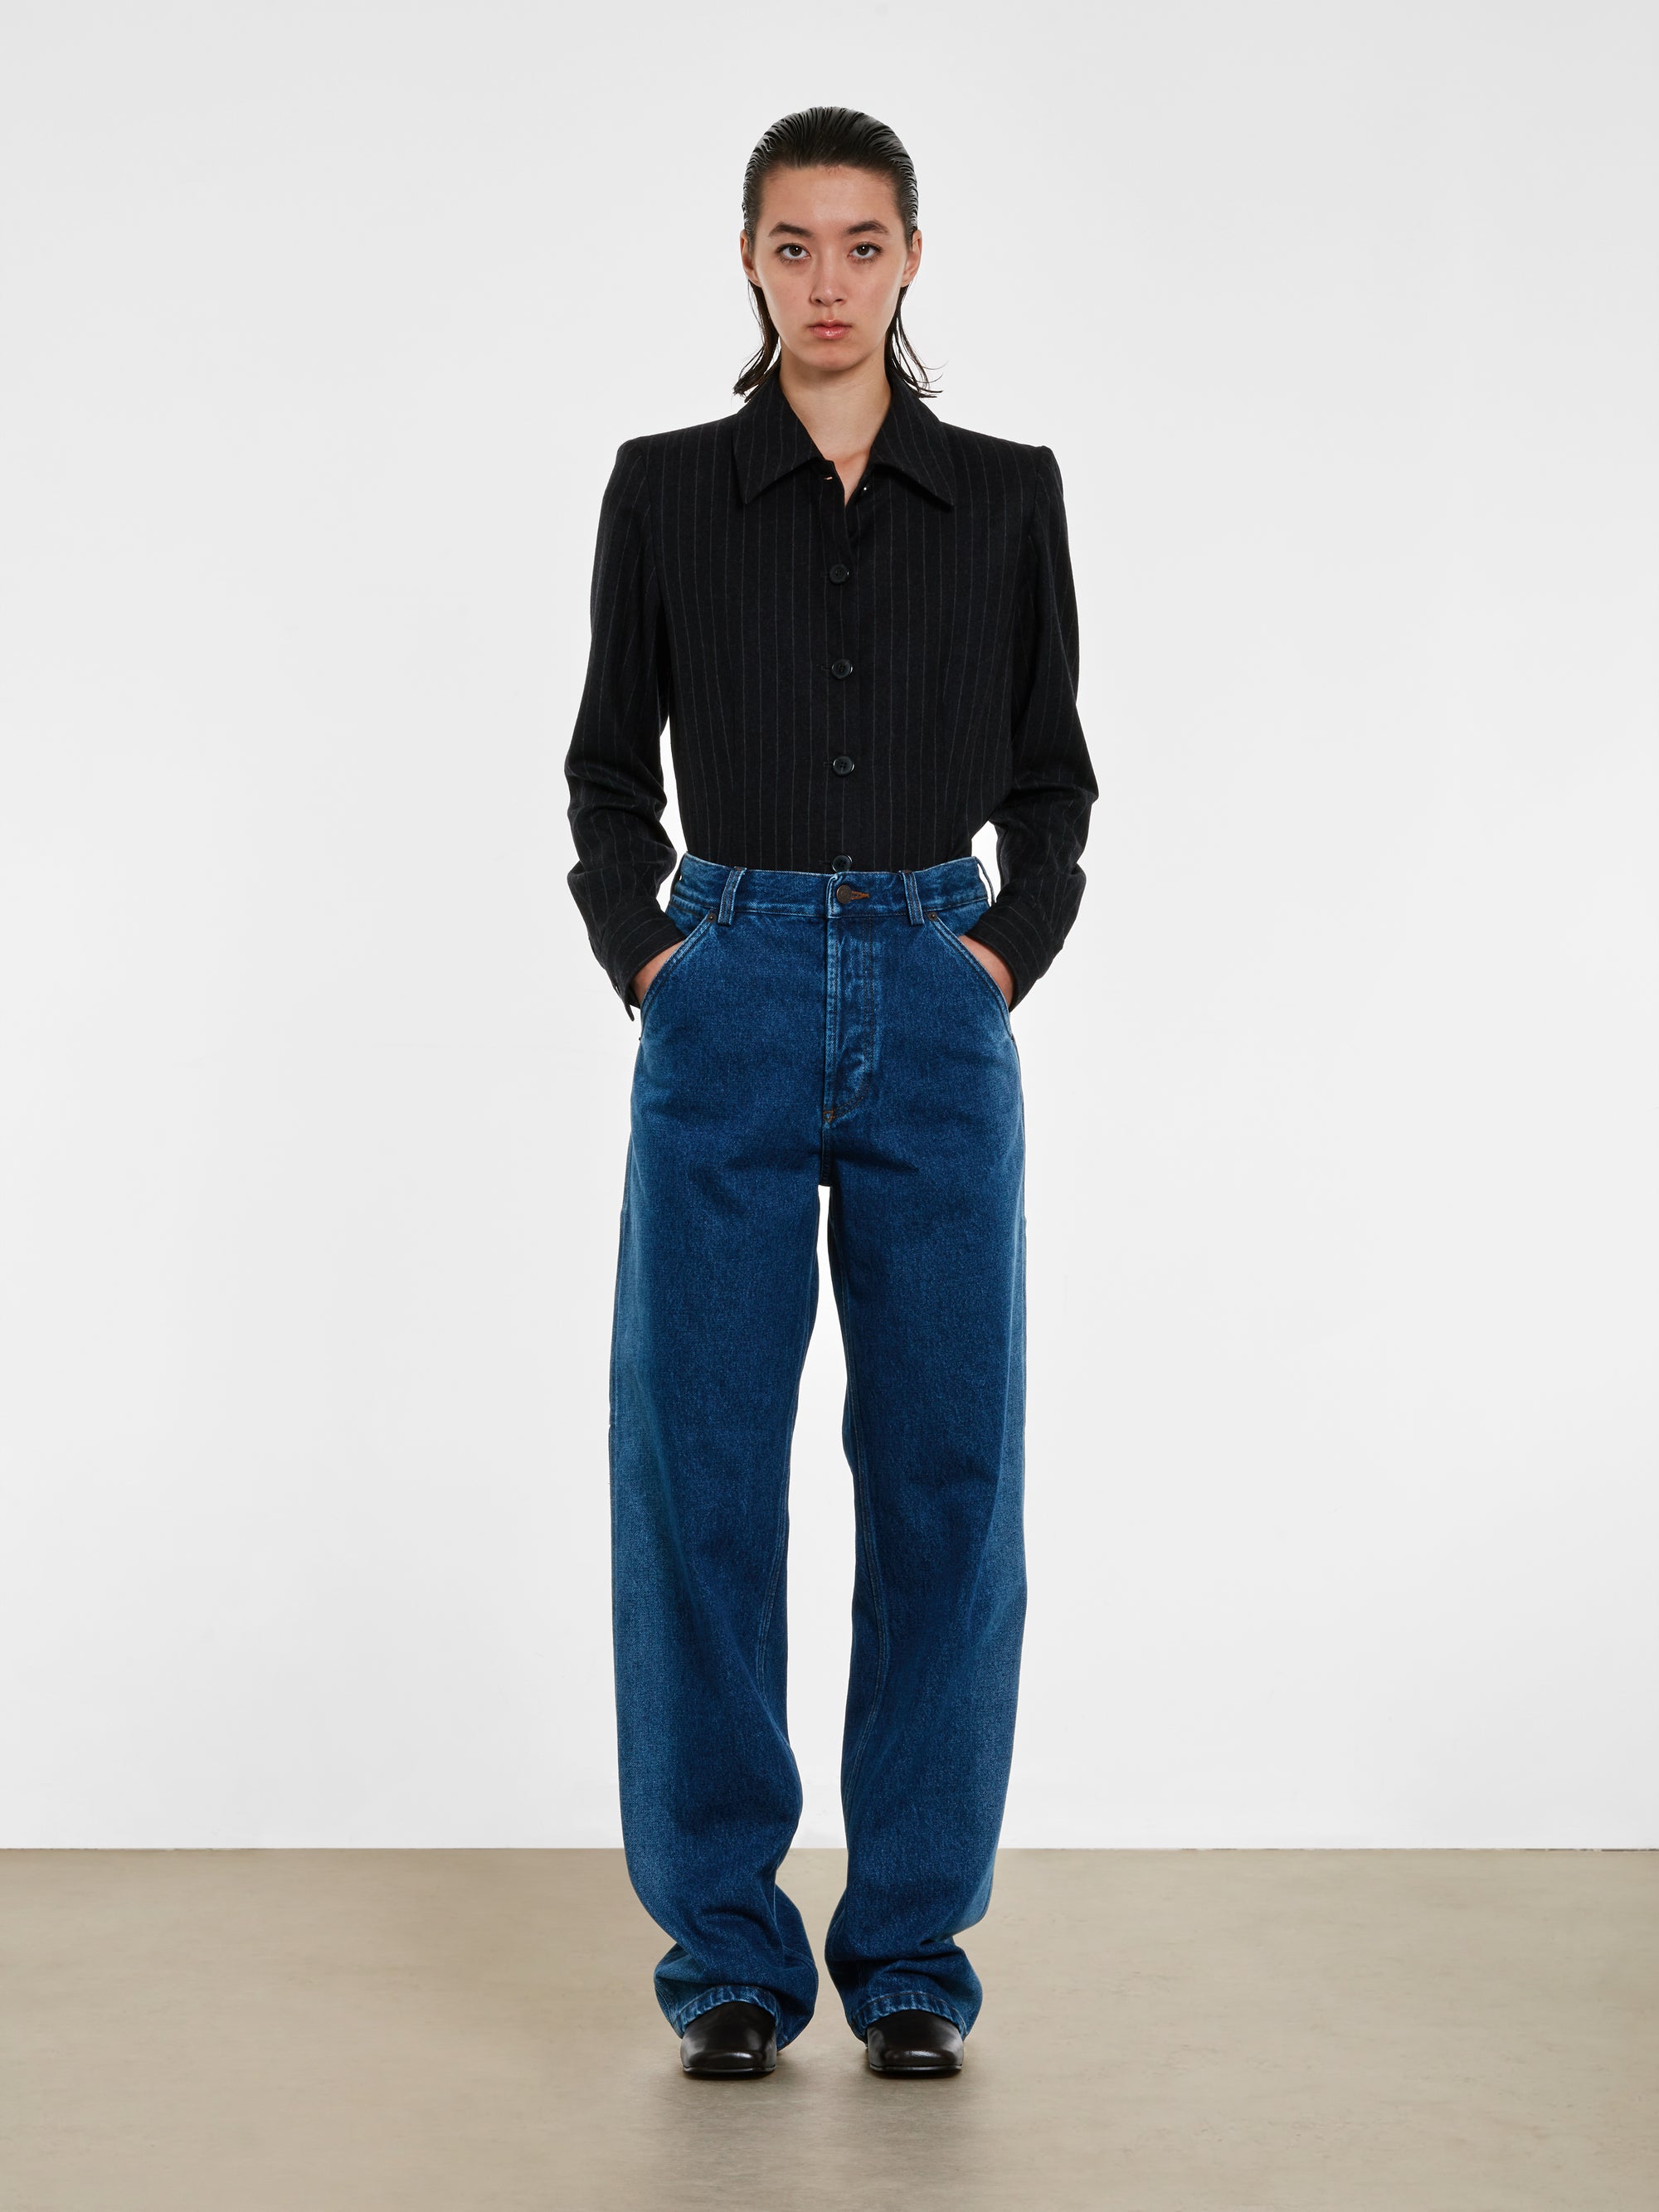 Dries Van Noten - Women’s Indigo Faded Jeans - (Indigo) view 4